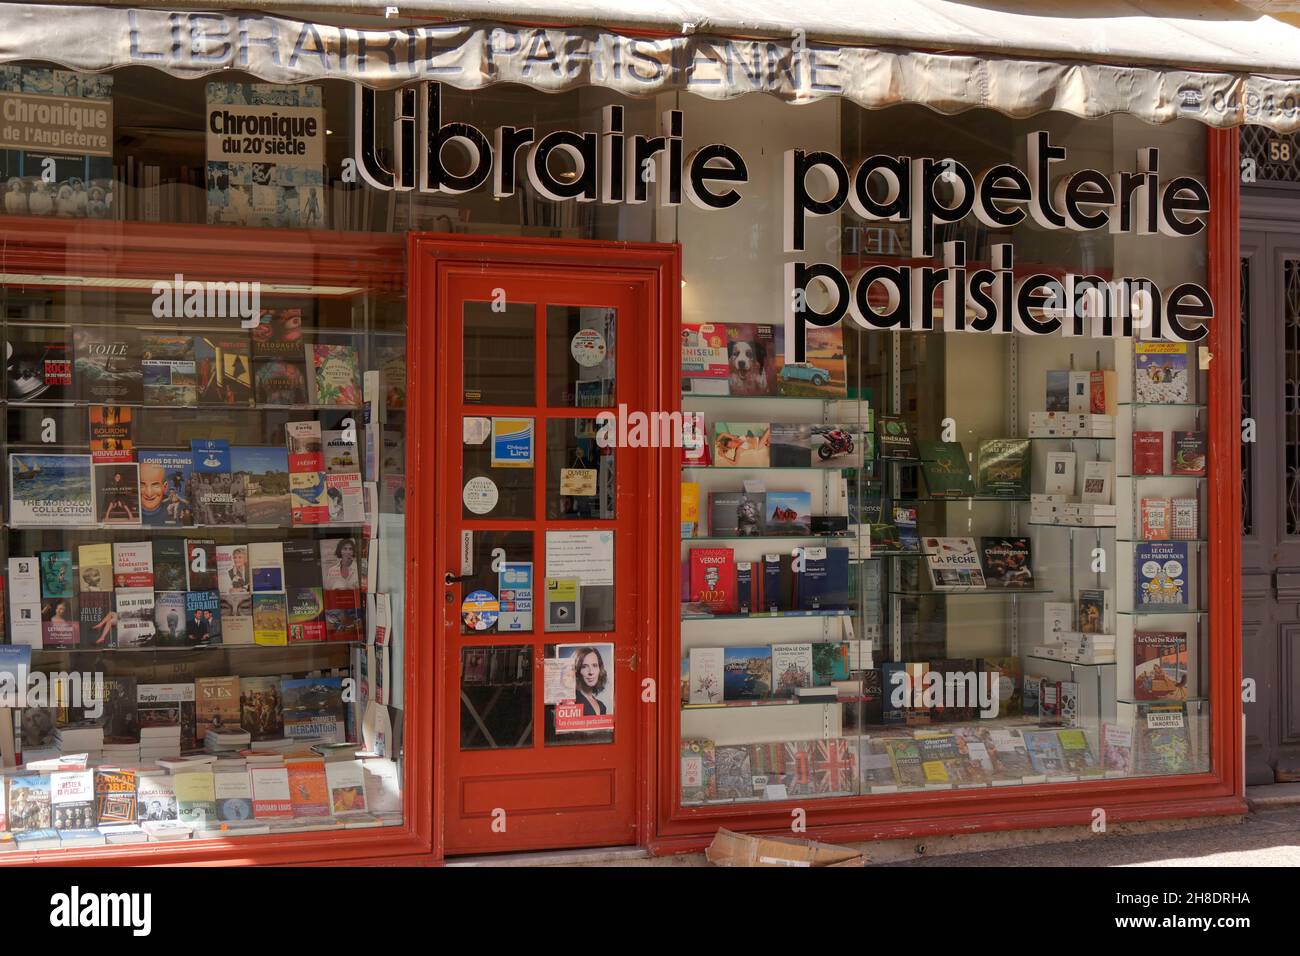 librairie papeterie parisienne bookshop, Saint-Raphaël,Cote d'Azur, France Stock Photo